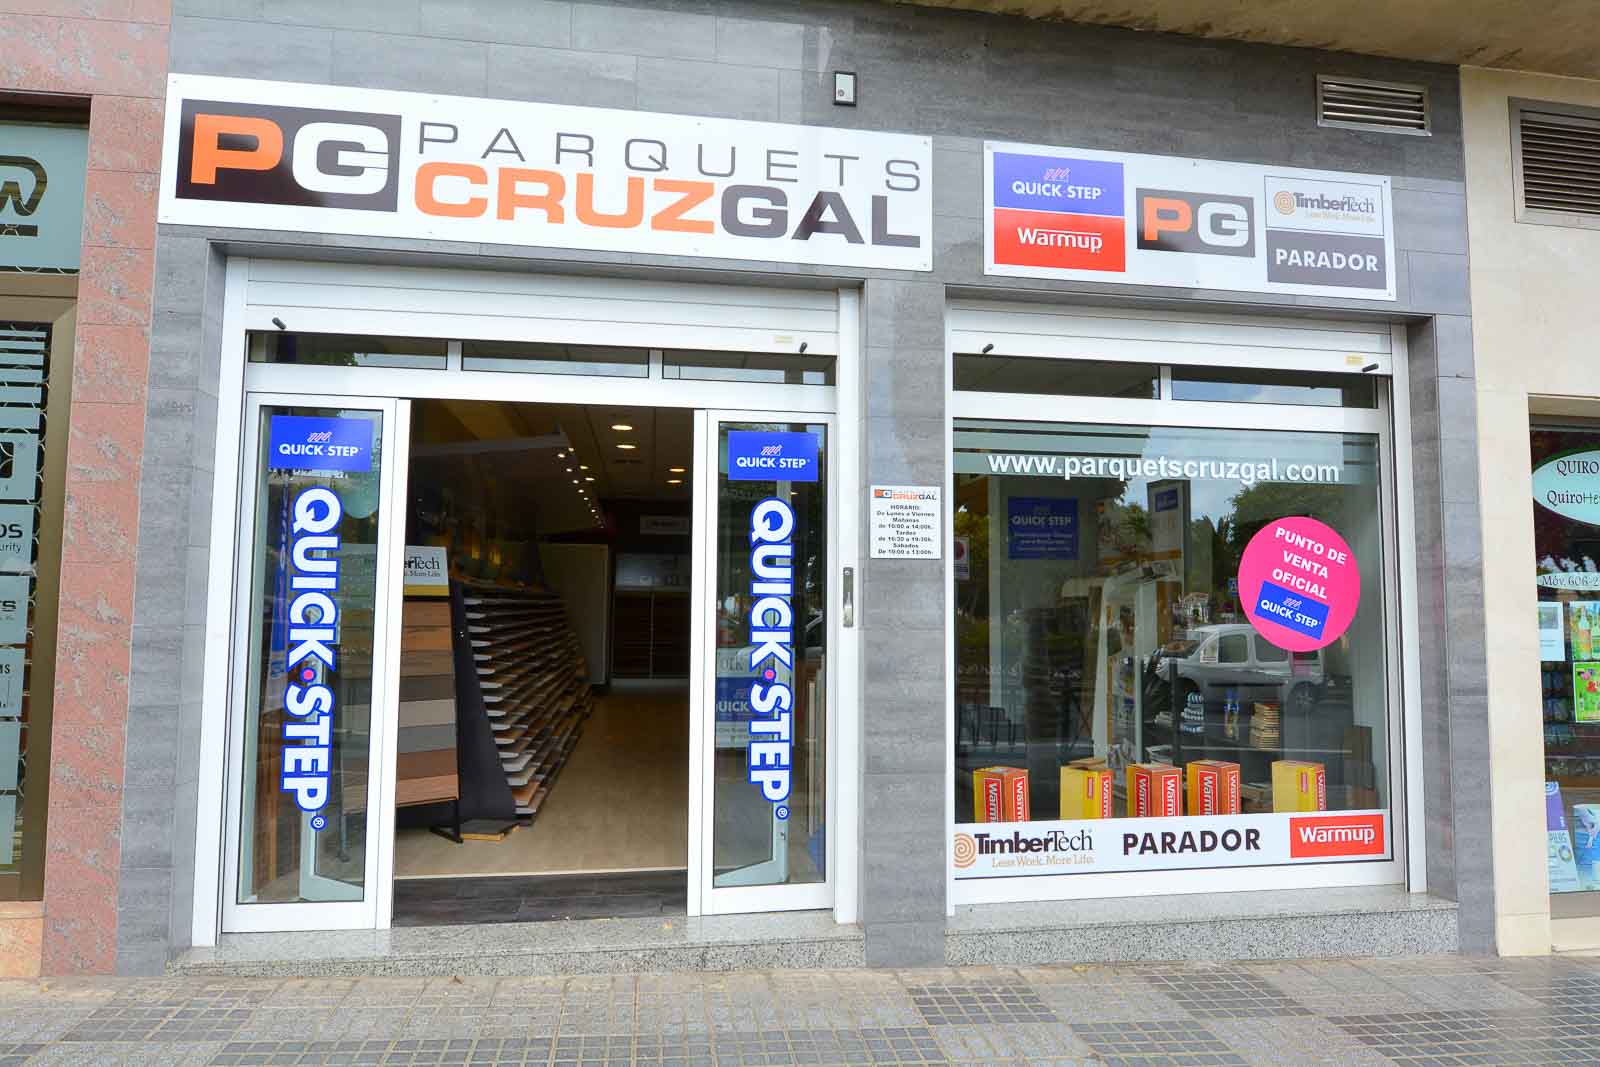 Parquets Cruz Gal Las Palmas copyright imagenia image consultant